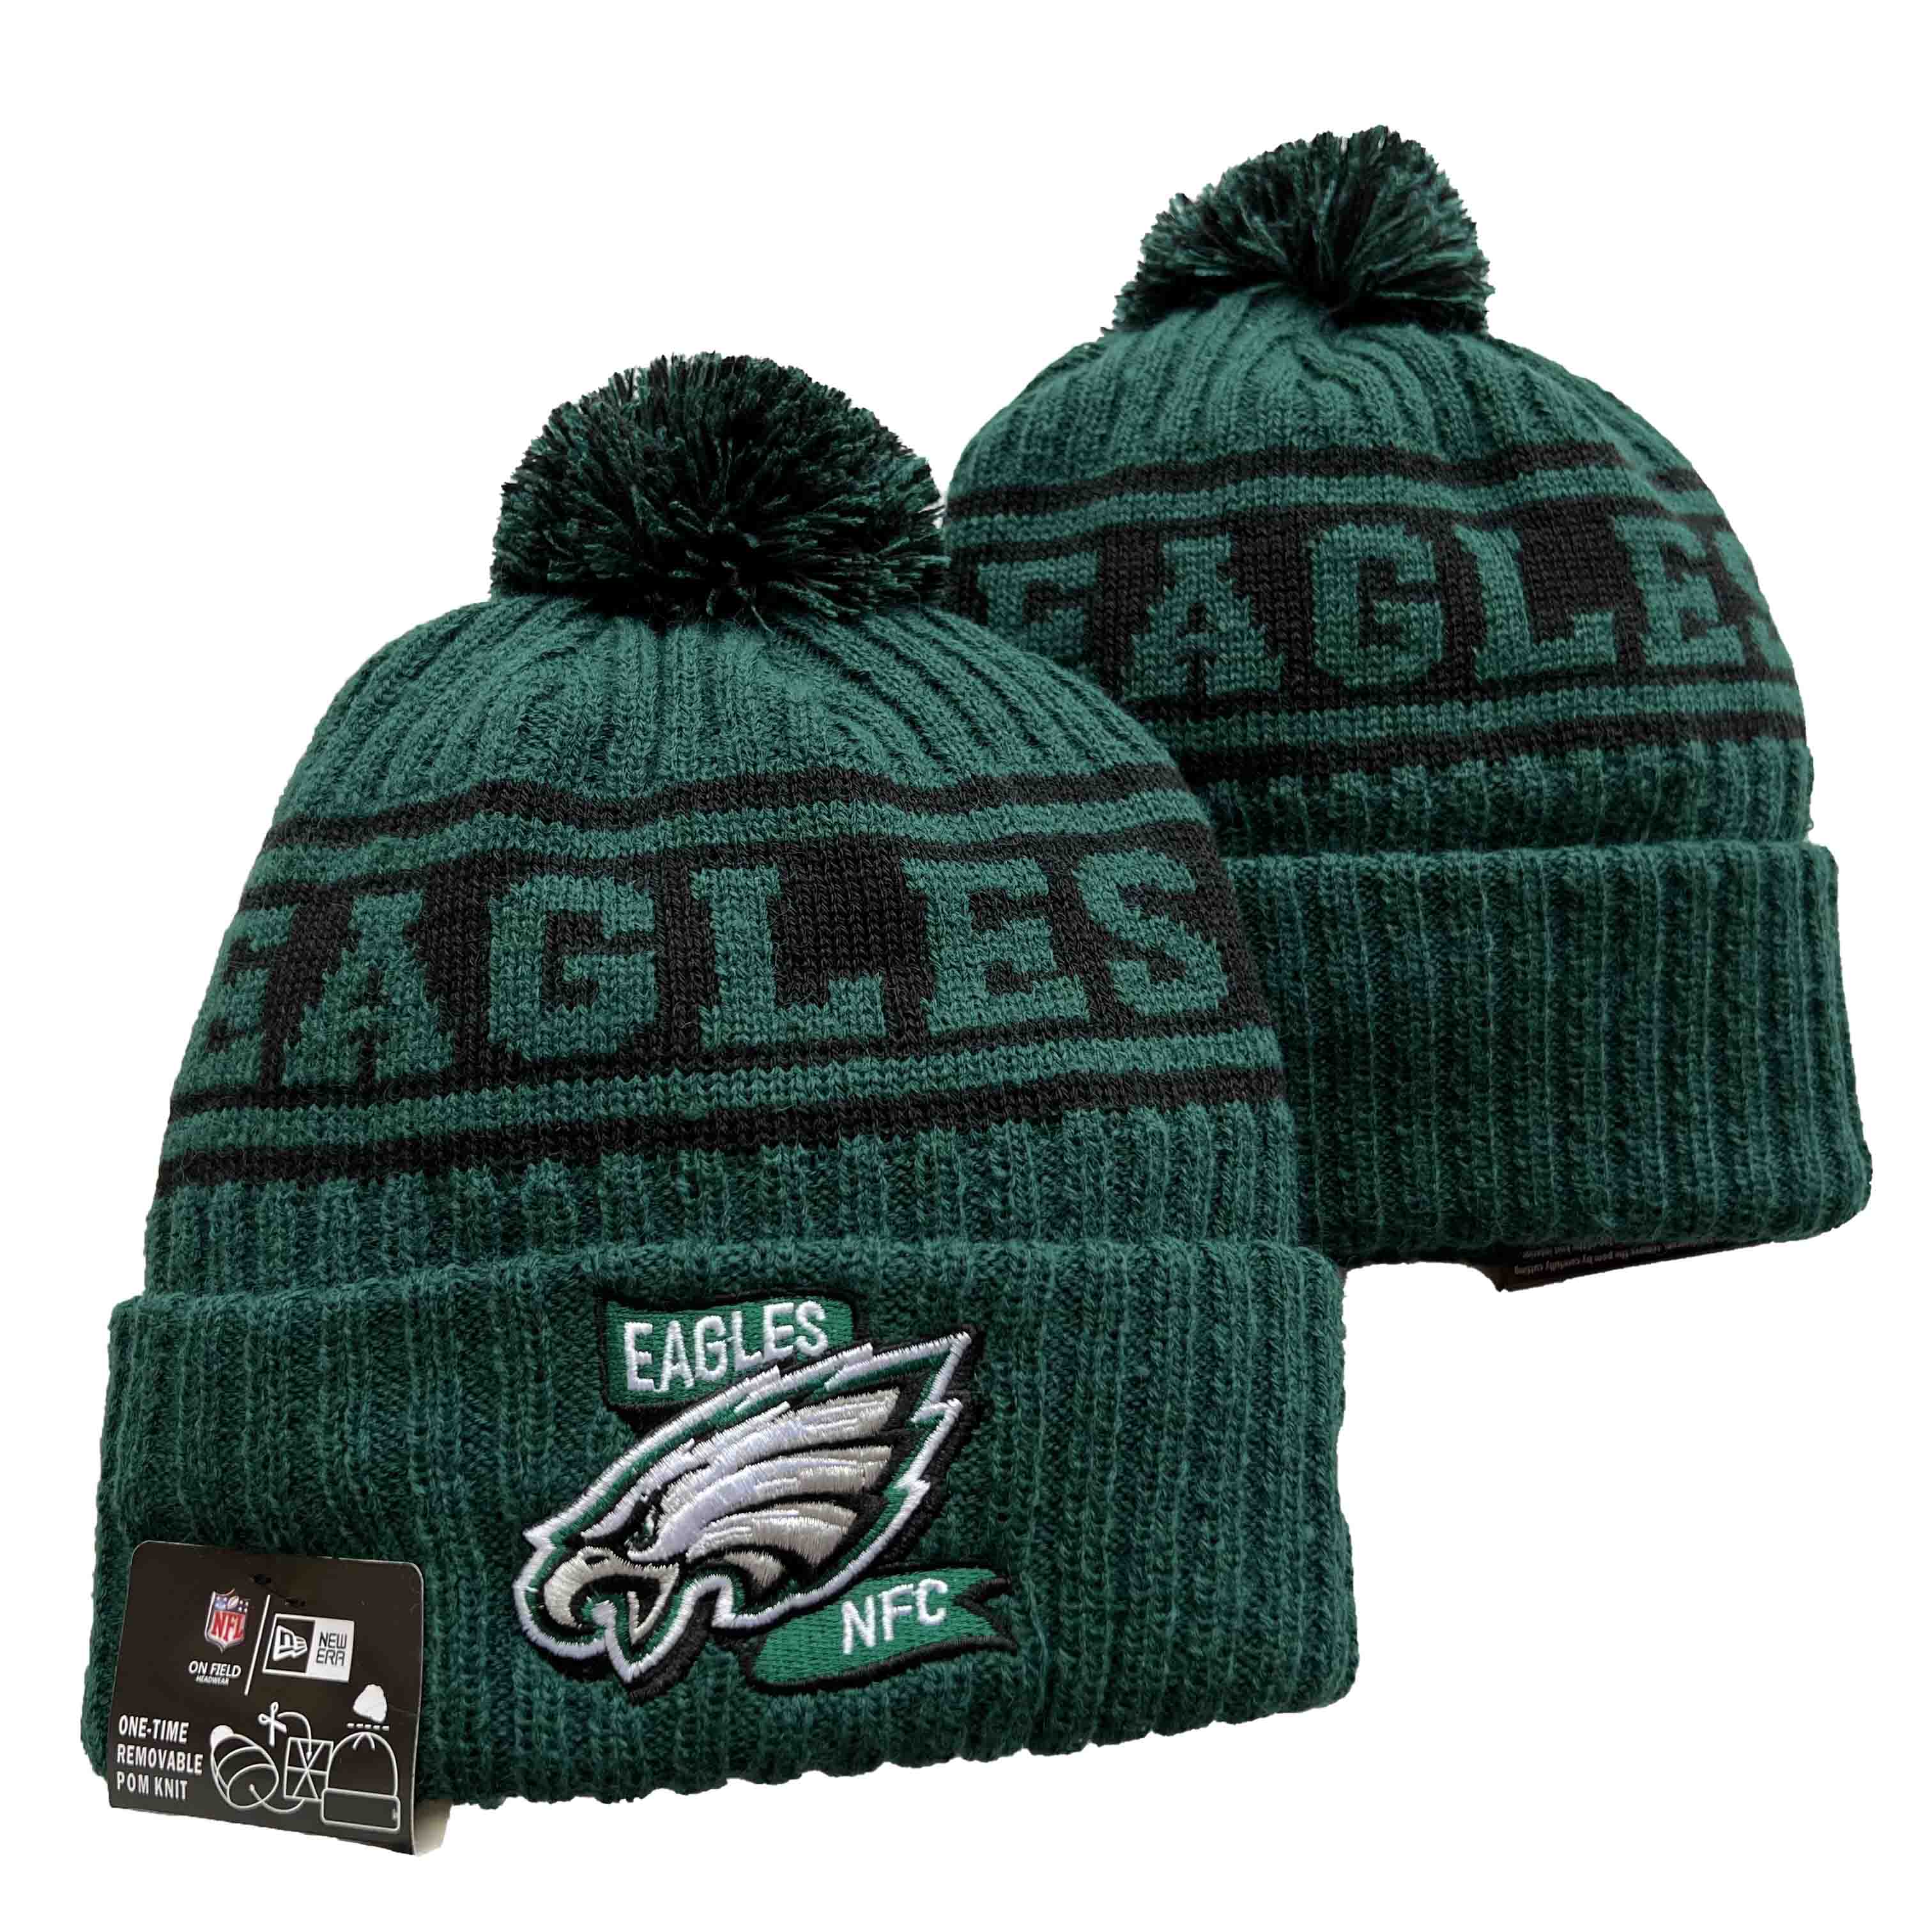 Philadelphia Eagles Cuffed Pom Knit Hat Green YD221202 (14)